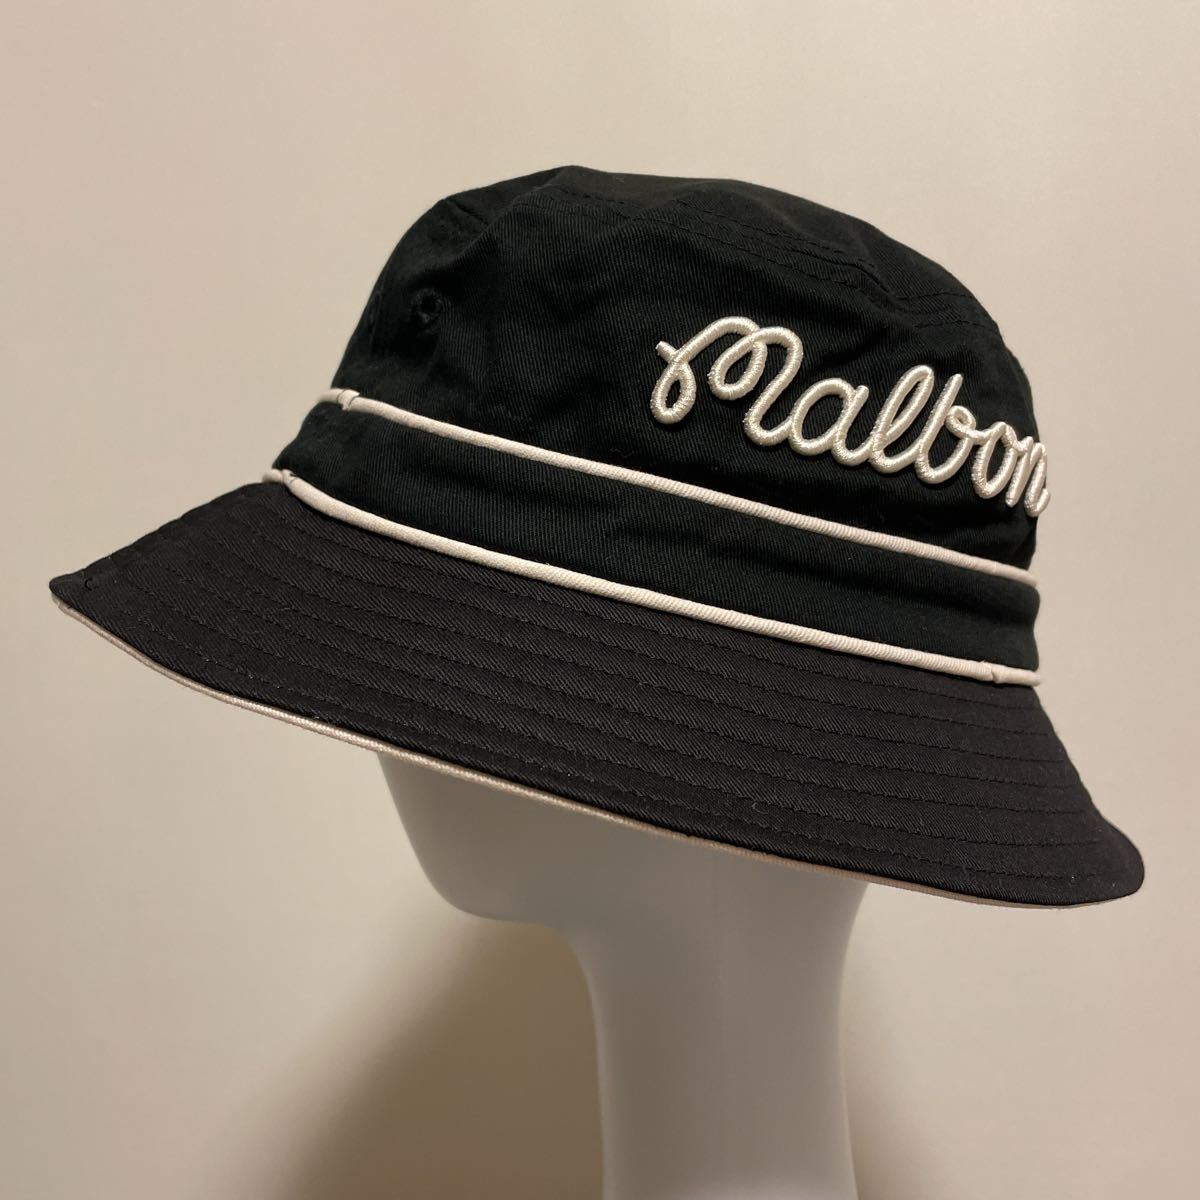 HA577 MALBON マルボン GOLF バケットハット 帽子 56.5cm 刺繍 ゴルフウェア